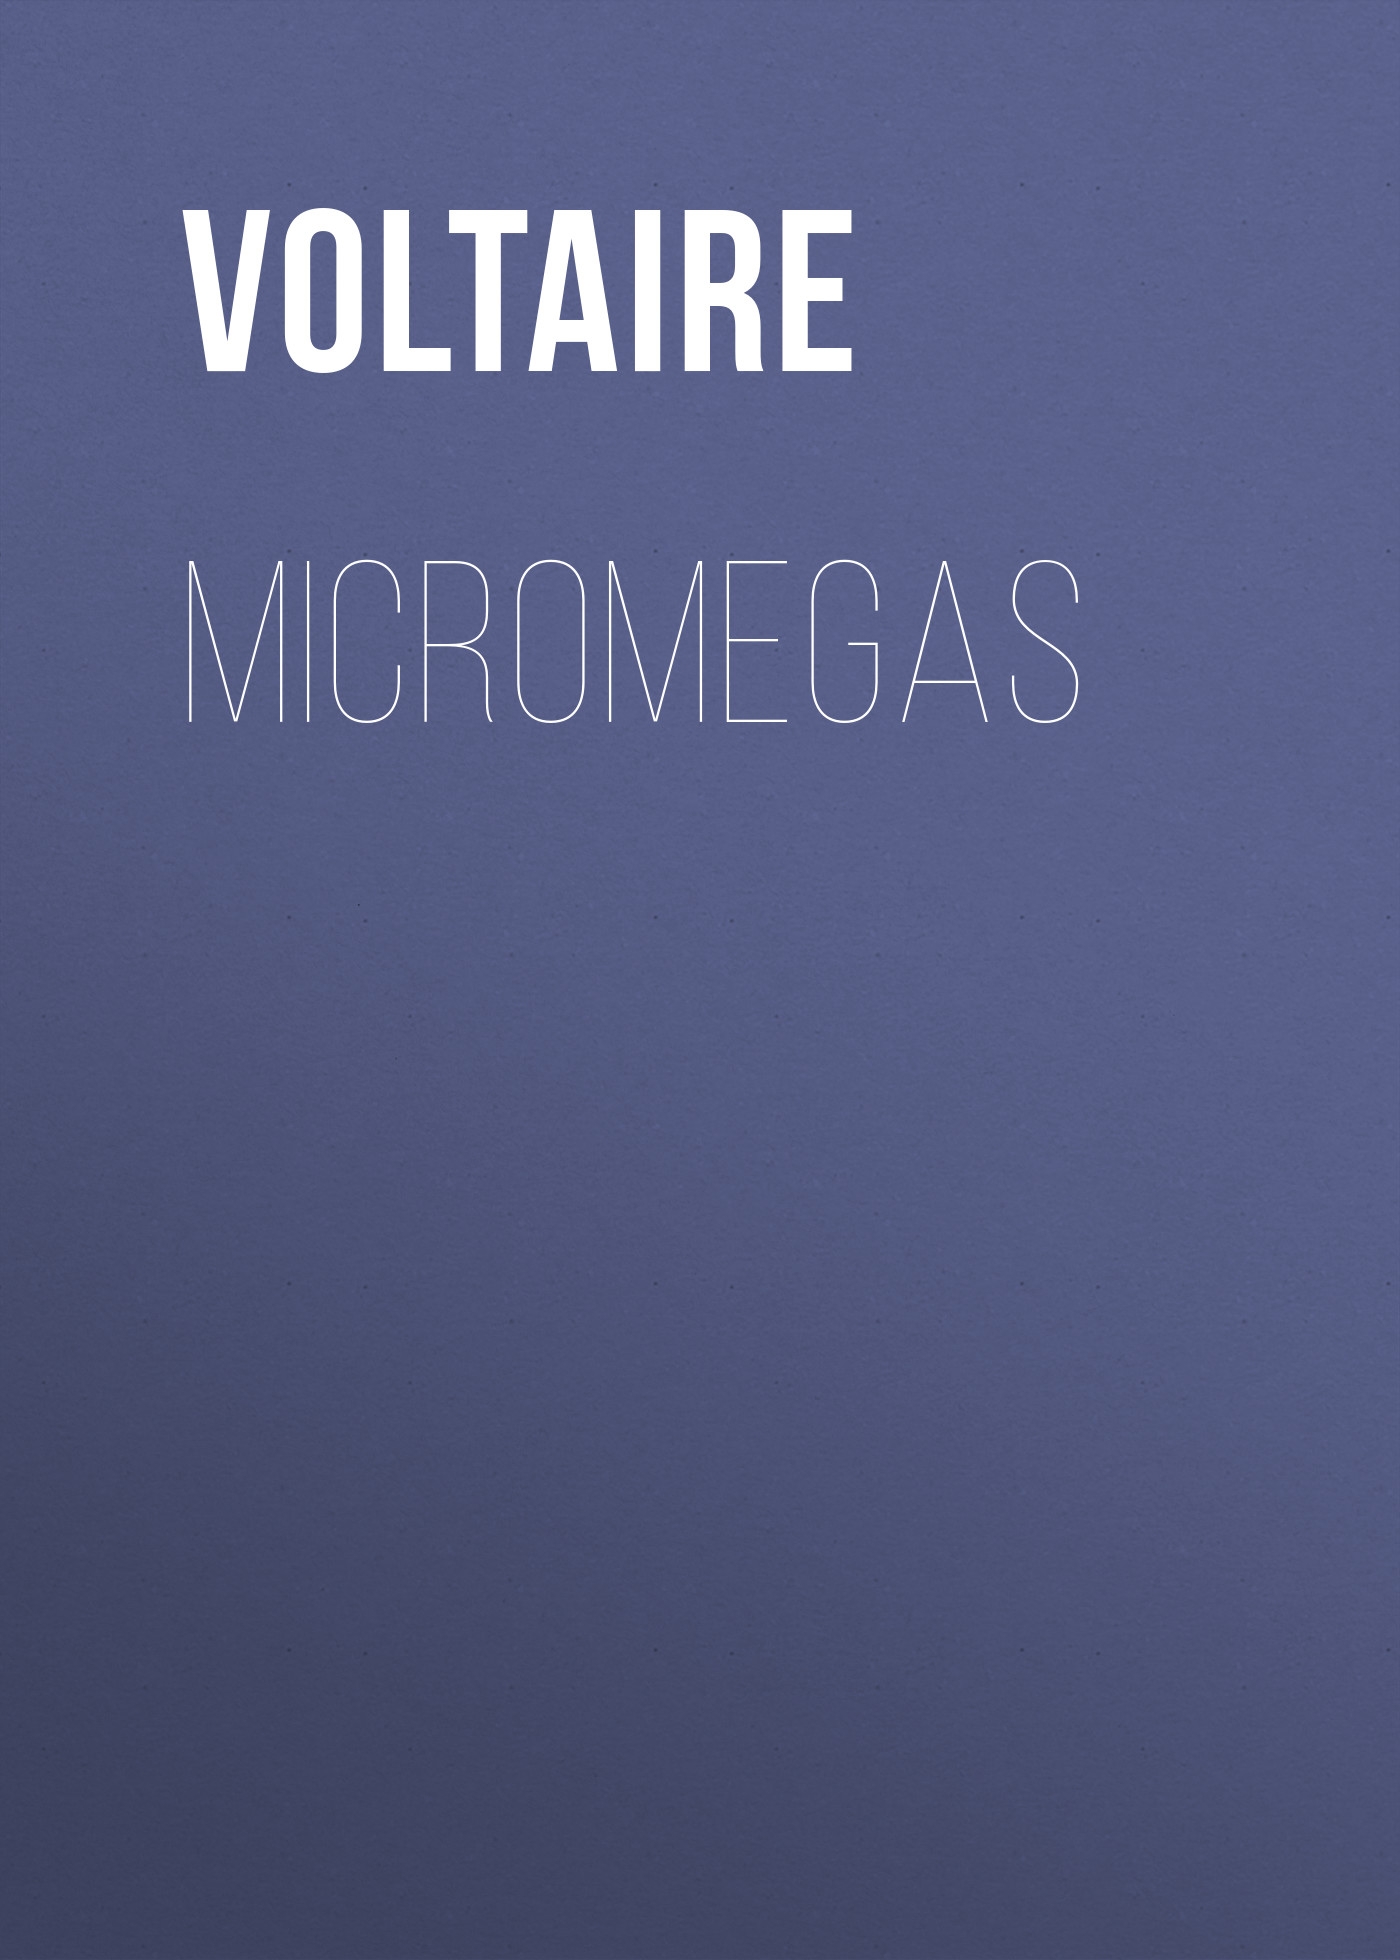 Книга Micromegas из серии , созданная  Voltaire, может относится к жанру Литература 18 века, Зарубежная классика, Зарубежная фантастика, Космическая фантастика. Стоимость электронной книги Micromegas с идентификатором 25560652 составляет 0 руб.